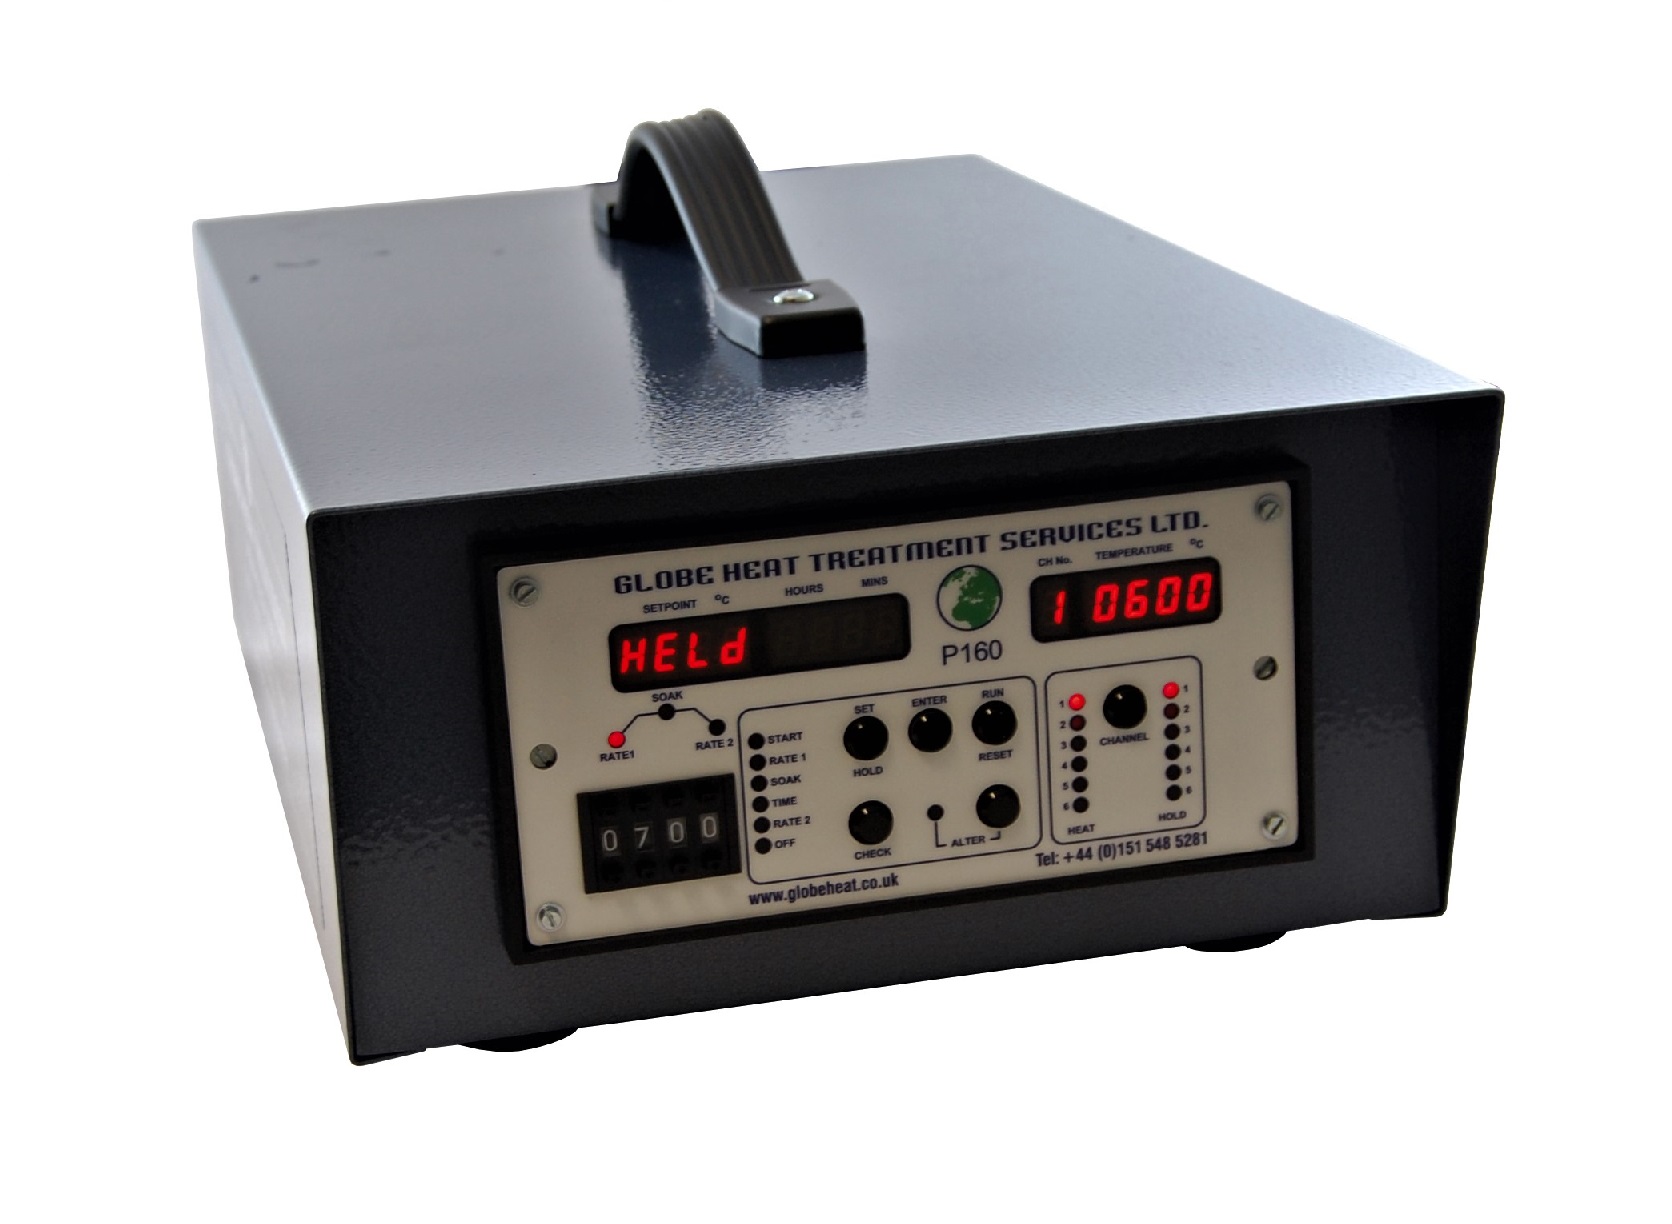 پروگرمر شش کانال پرتابل کنترل دما مدل GHT-3001 ساخت گلوب انگلستان